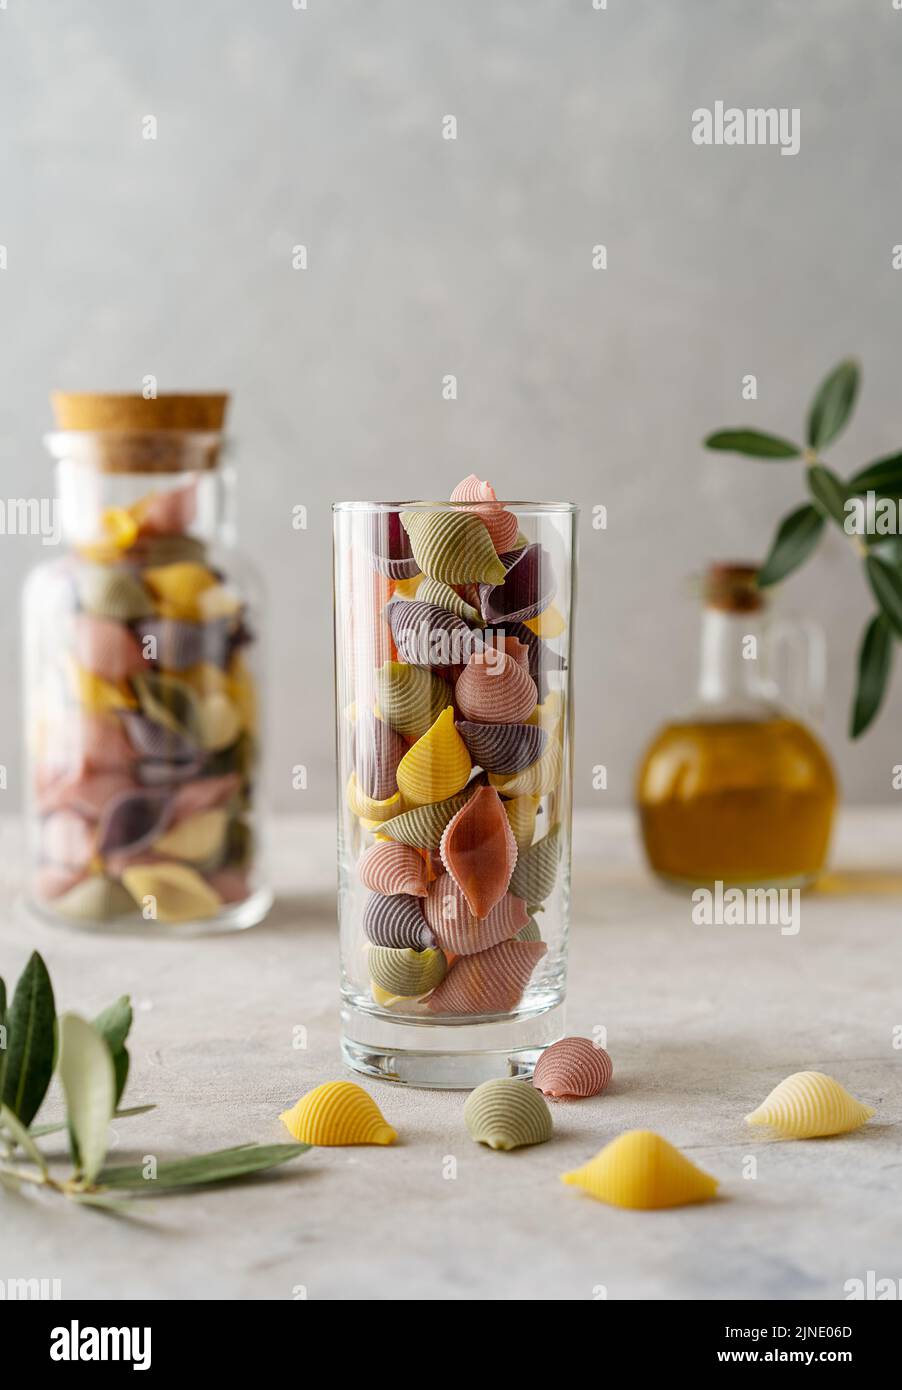 Mehrfarbige italienische Pasta Conchiglie oder Muscheln in Glas und Flasche, Olivenöl, Olivenzweig. Konkreter Hintergrund Stockfoto